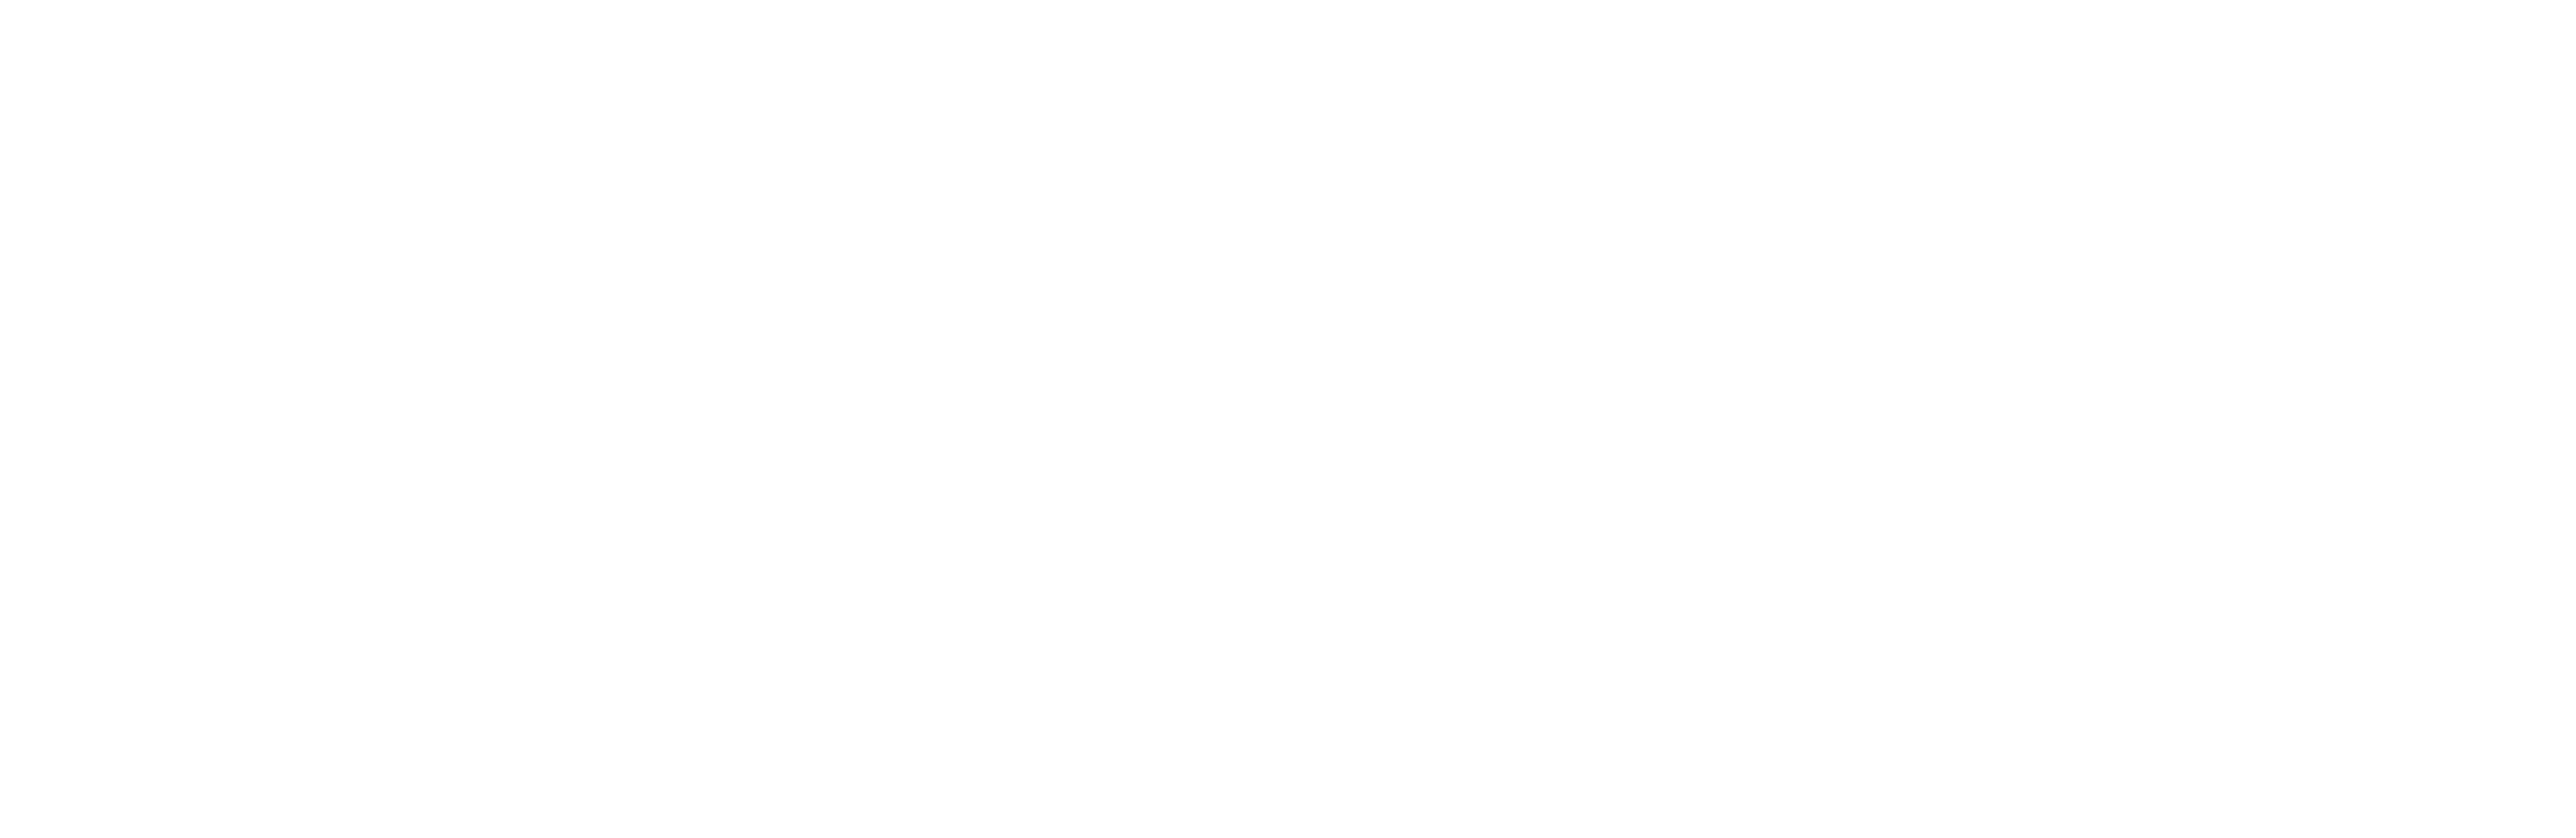 BMTA Logo